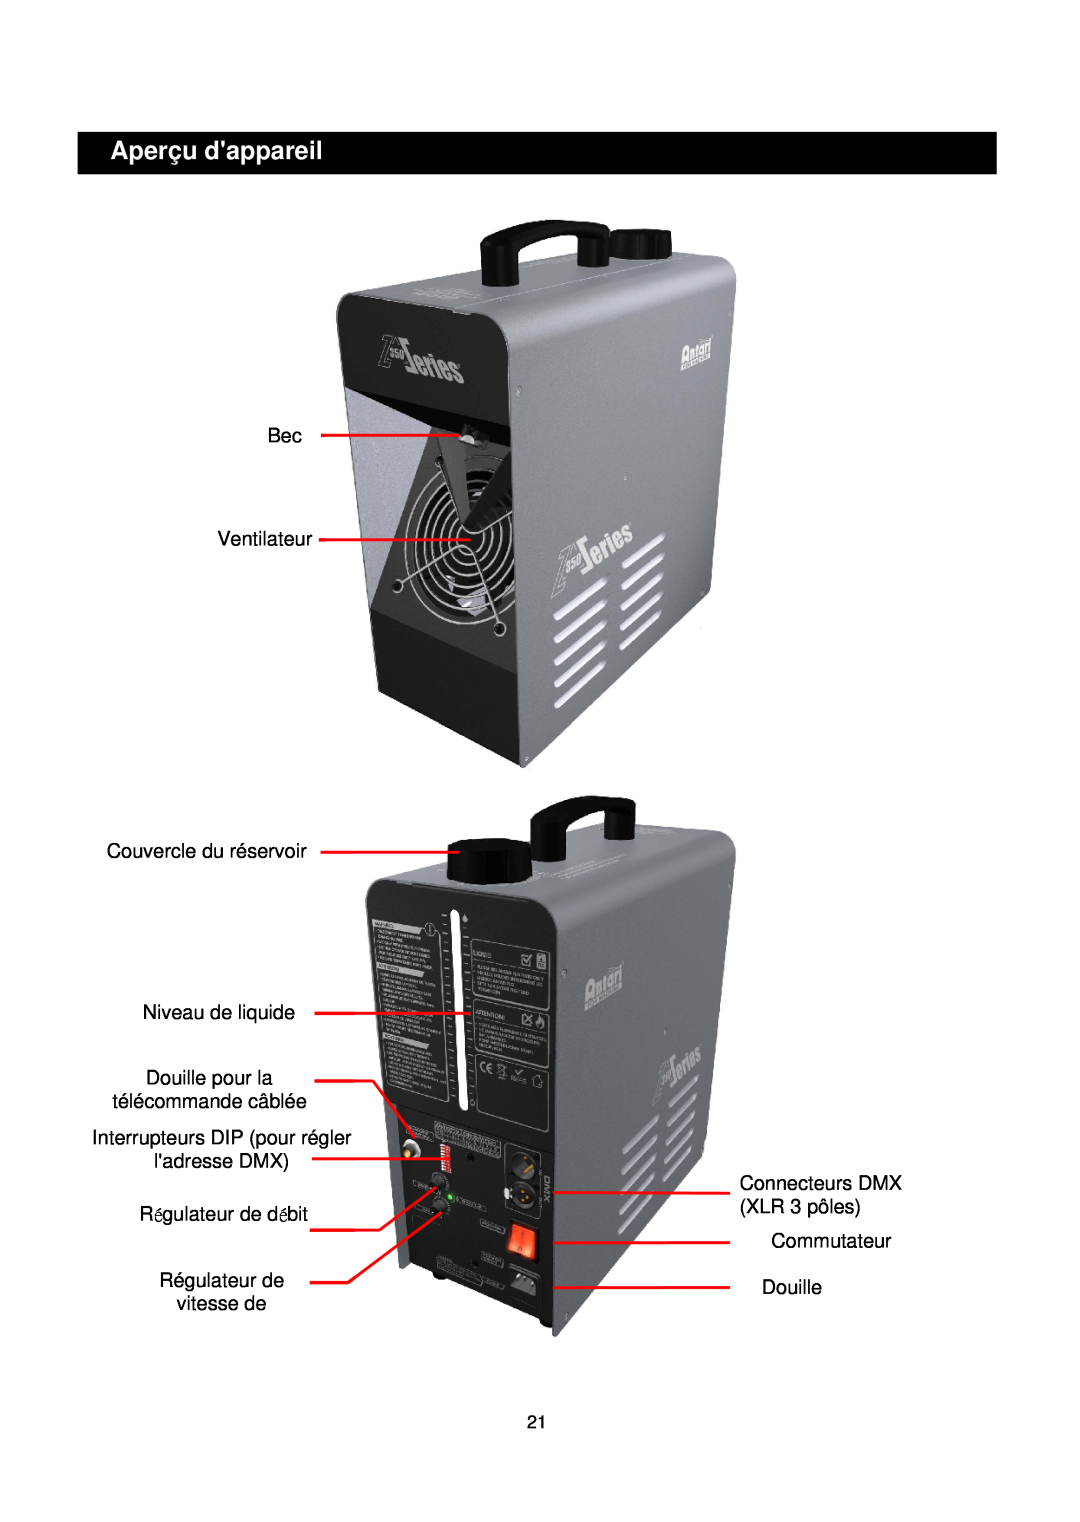 Antari Lighting and Effects Z-350 user manual Aperçu dappareil, Bec Ventilateur Couvercle du réservoir, Niveau de liquide 